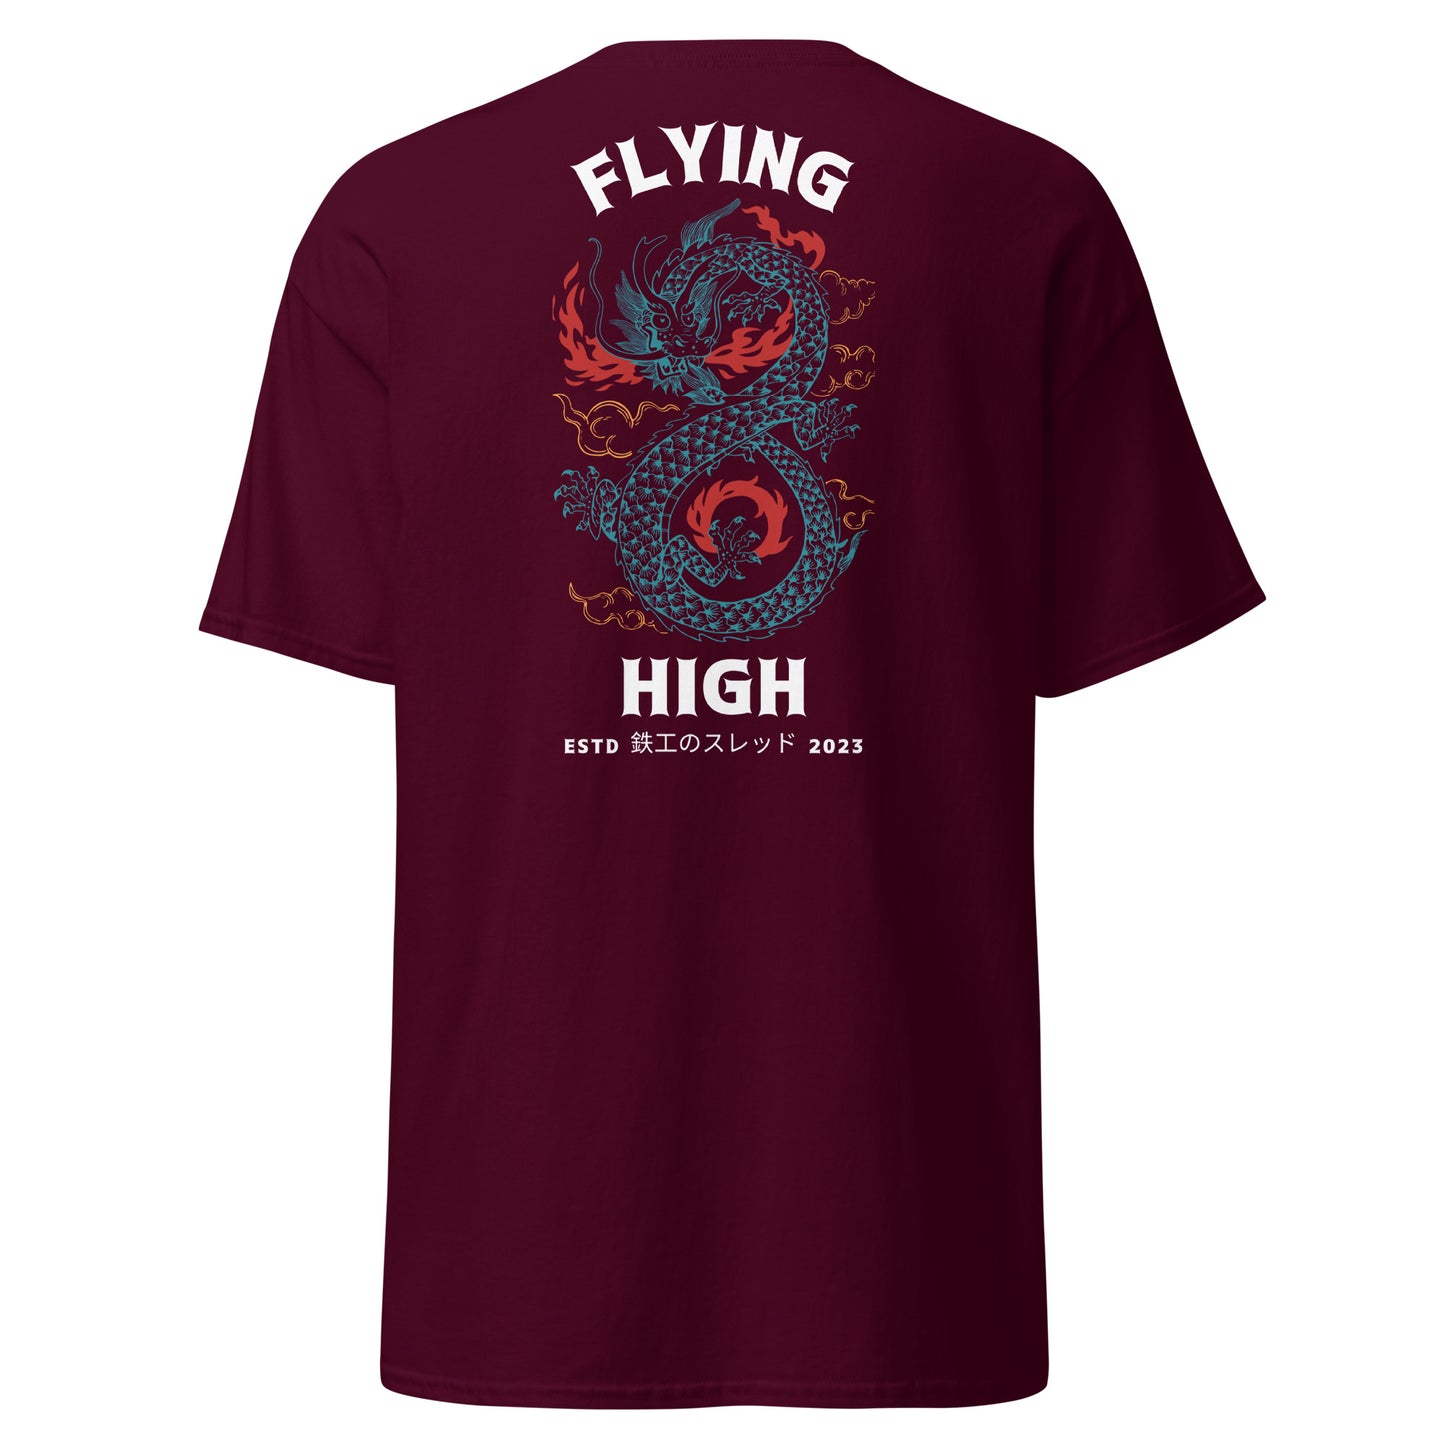 Flying High T-shirt